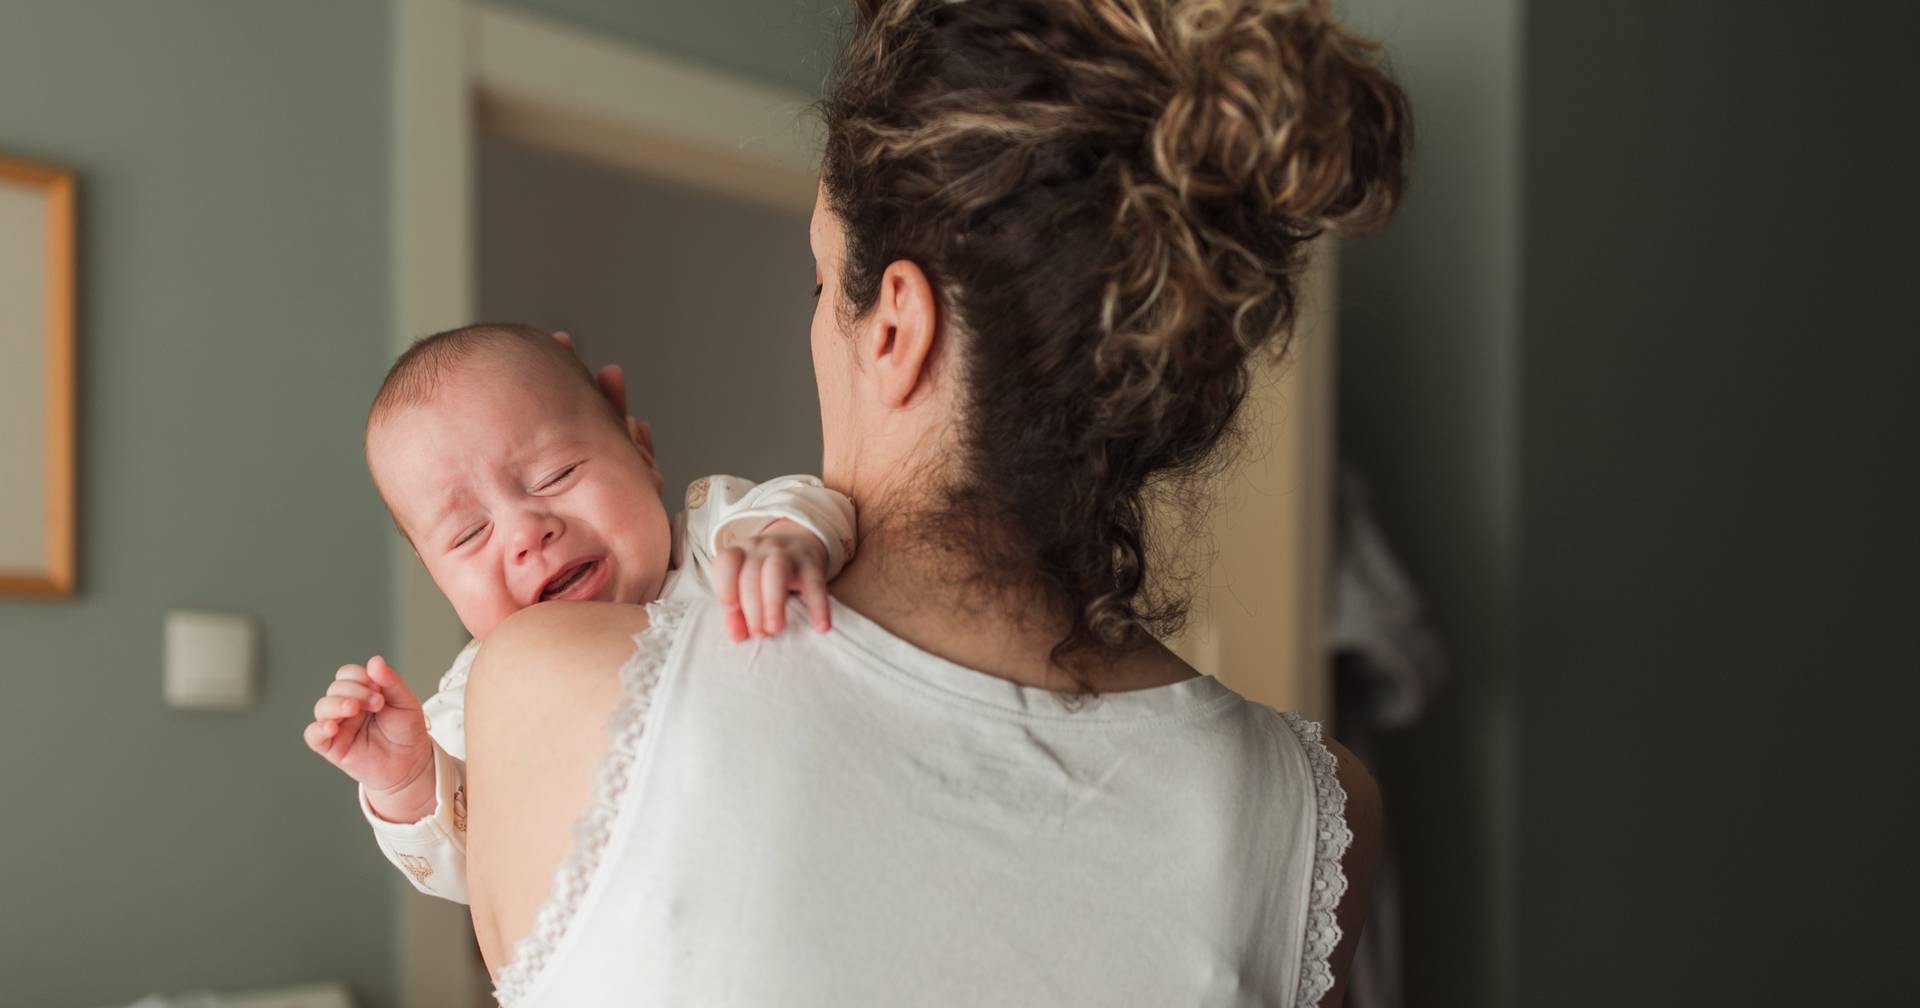 科学者は、明らかな理由もなく泣いている赤ちゃんを落ち着かせる方法を明らかにします